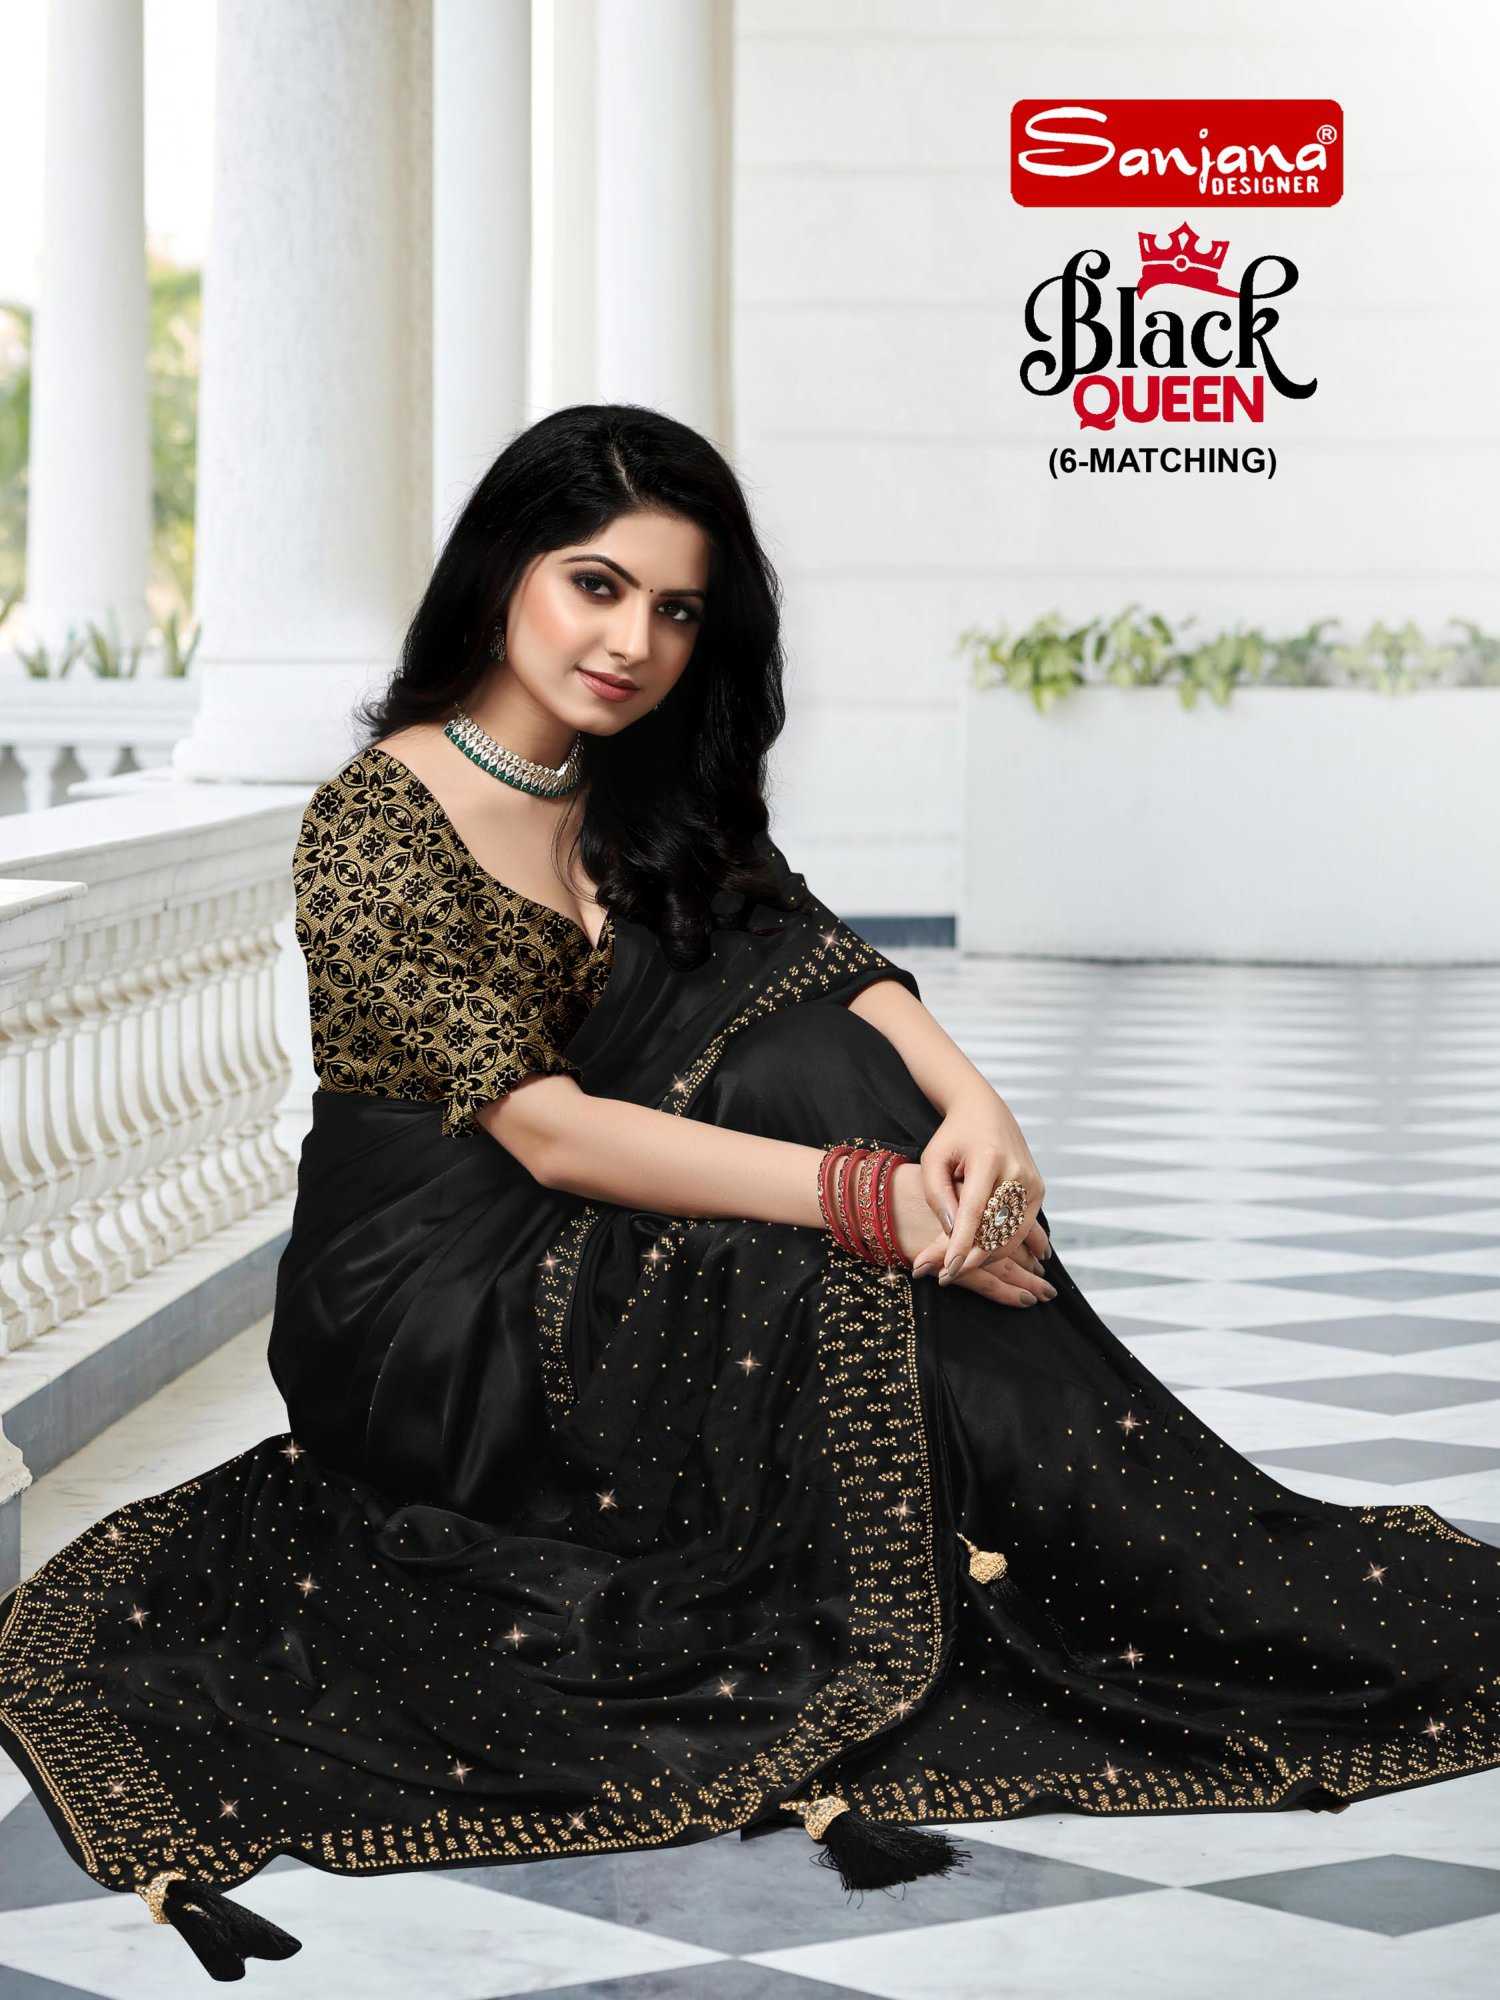 sanjana designer black queen designer swarovski work amazing sarees online supplier